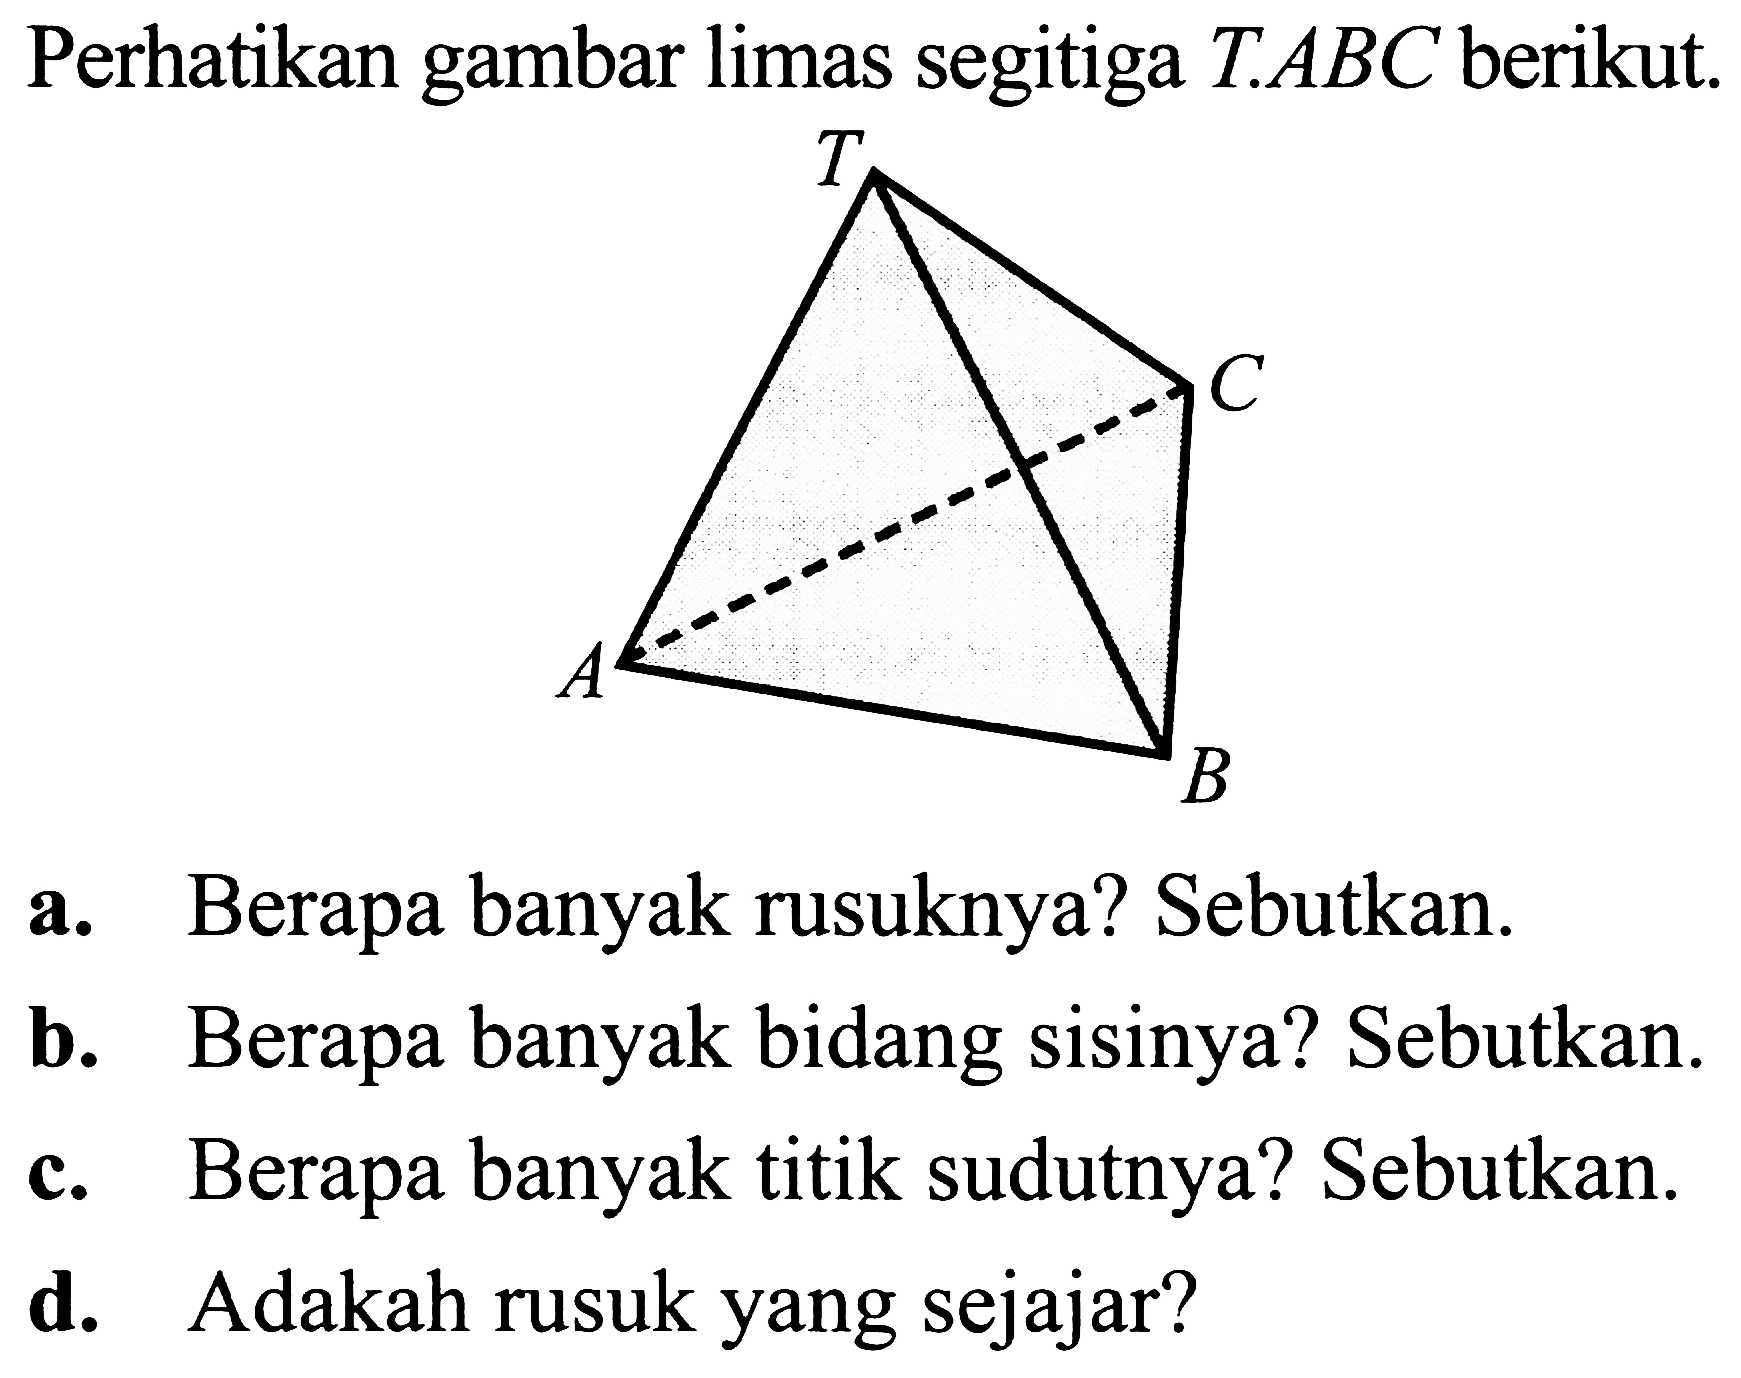 Perhatikan gambar limas segitiga  T . A B C  berikut.
a. Berapa banyak rusuknya? Sebutkan.
b. Berapa banyak bidang sisinya? Sebutkan.
c. Berapa banyak titik sudutnya? Sebutkan.
d. Adakah rusuk yang sejajar?